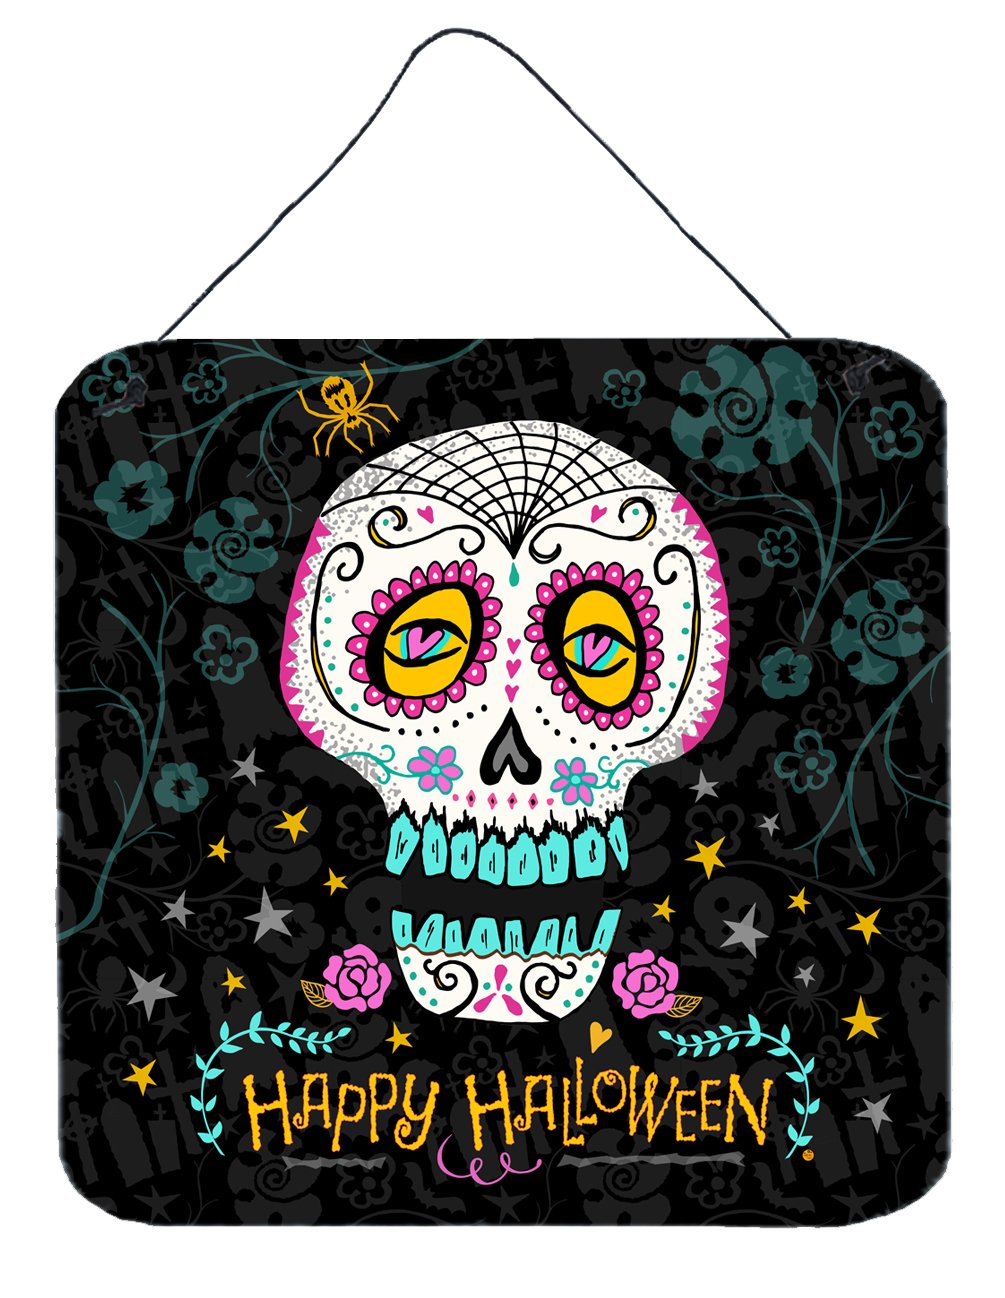 Happy Halloween Day of the Dead Wall or Door Hanging Prints by Caroline's Treasures